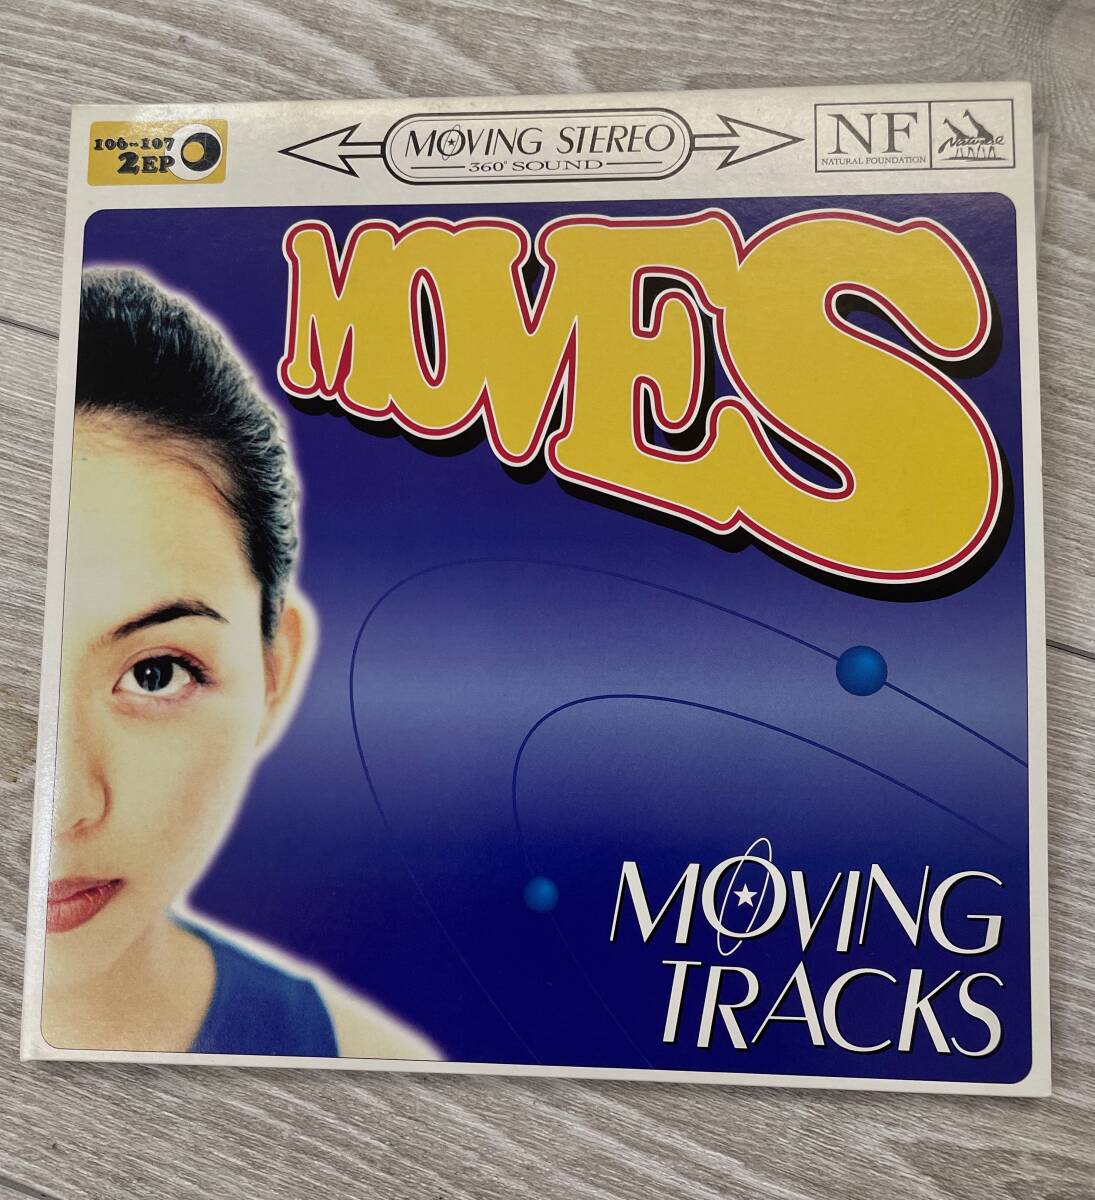 MOVES - MOVING TRACKS (ナチュラル・ファウンデーション'96 / 7inch2 見開き仕様 )の画像1